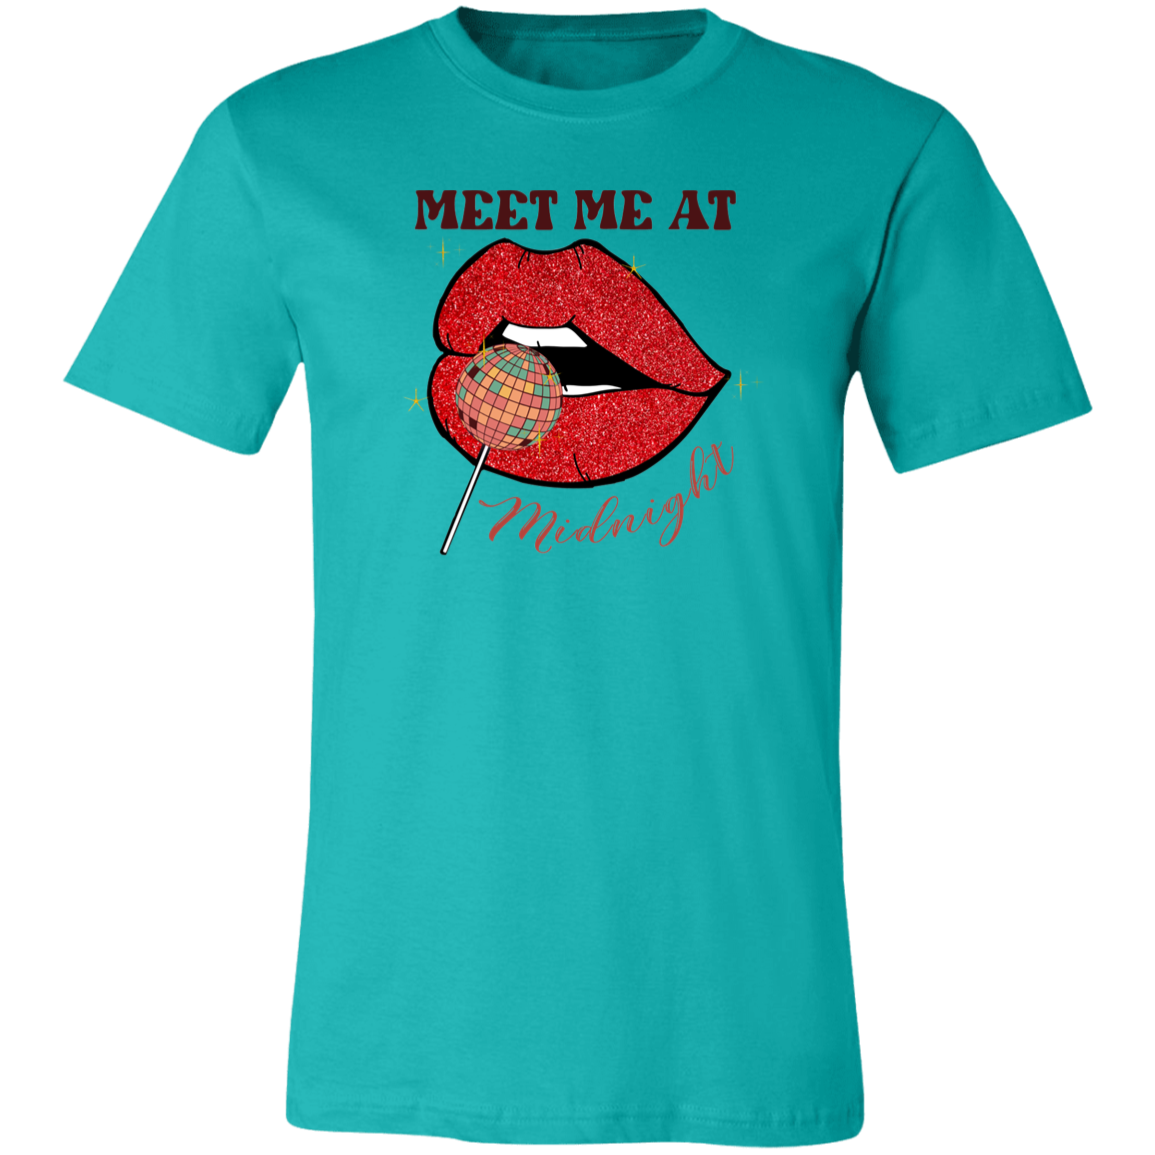 Meet Me at Midnight Shirt